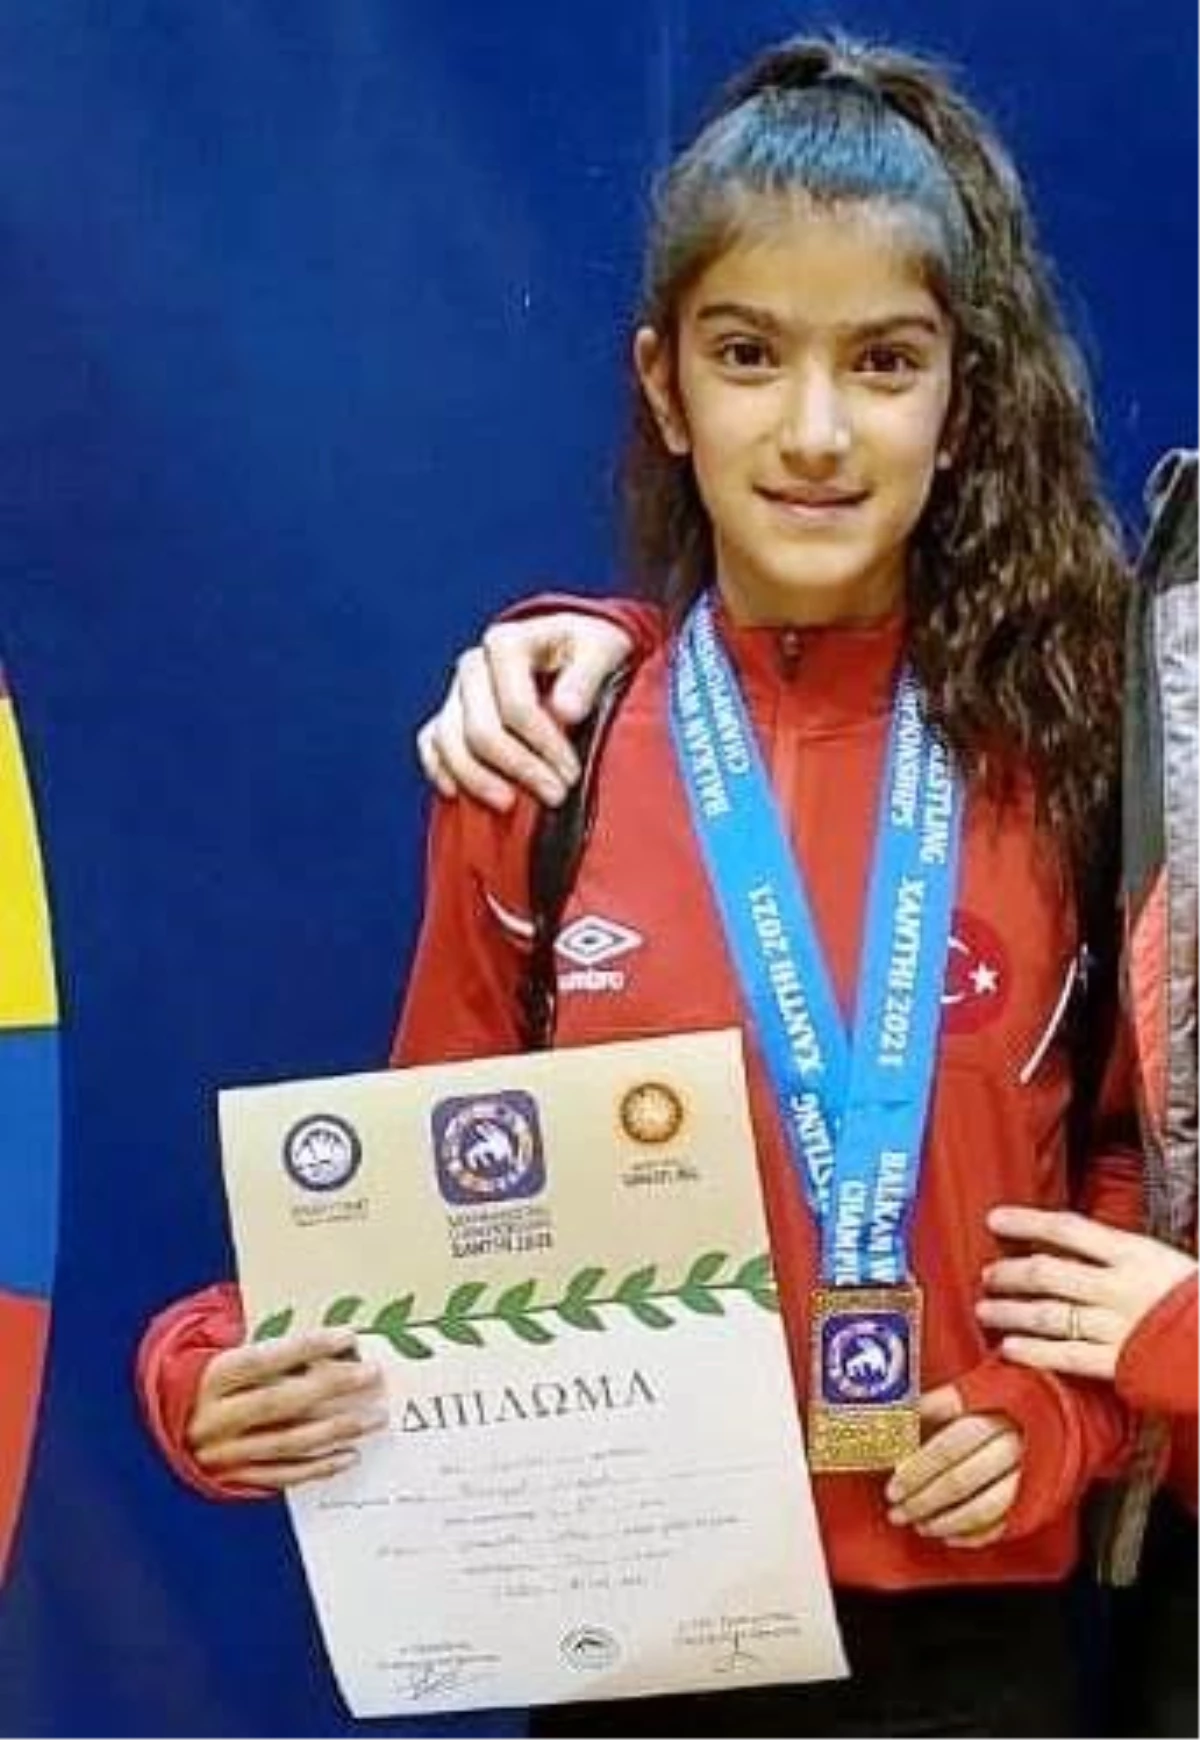 Πρωταθλήτρια Βαλκανίων αναδείχθηκε η παλαίστρια Birgül Şimşek από το Άγρι